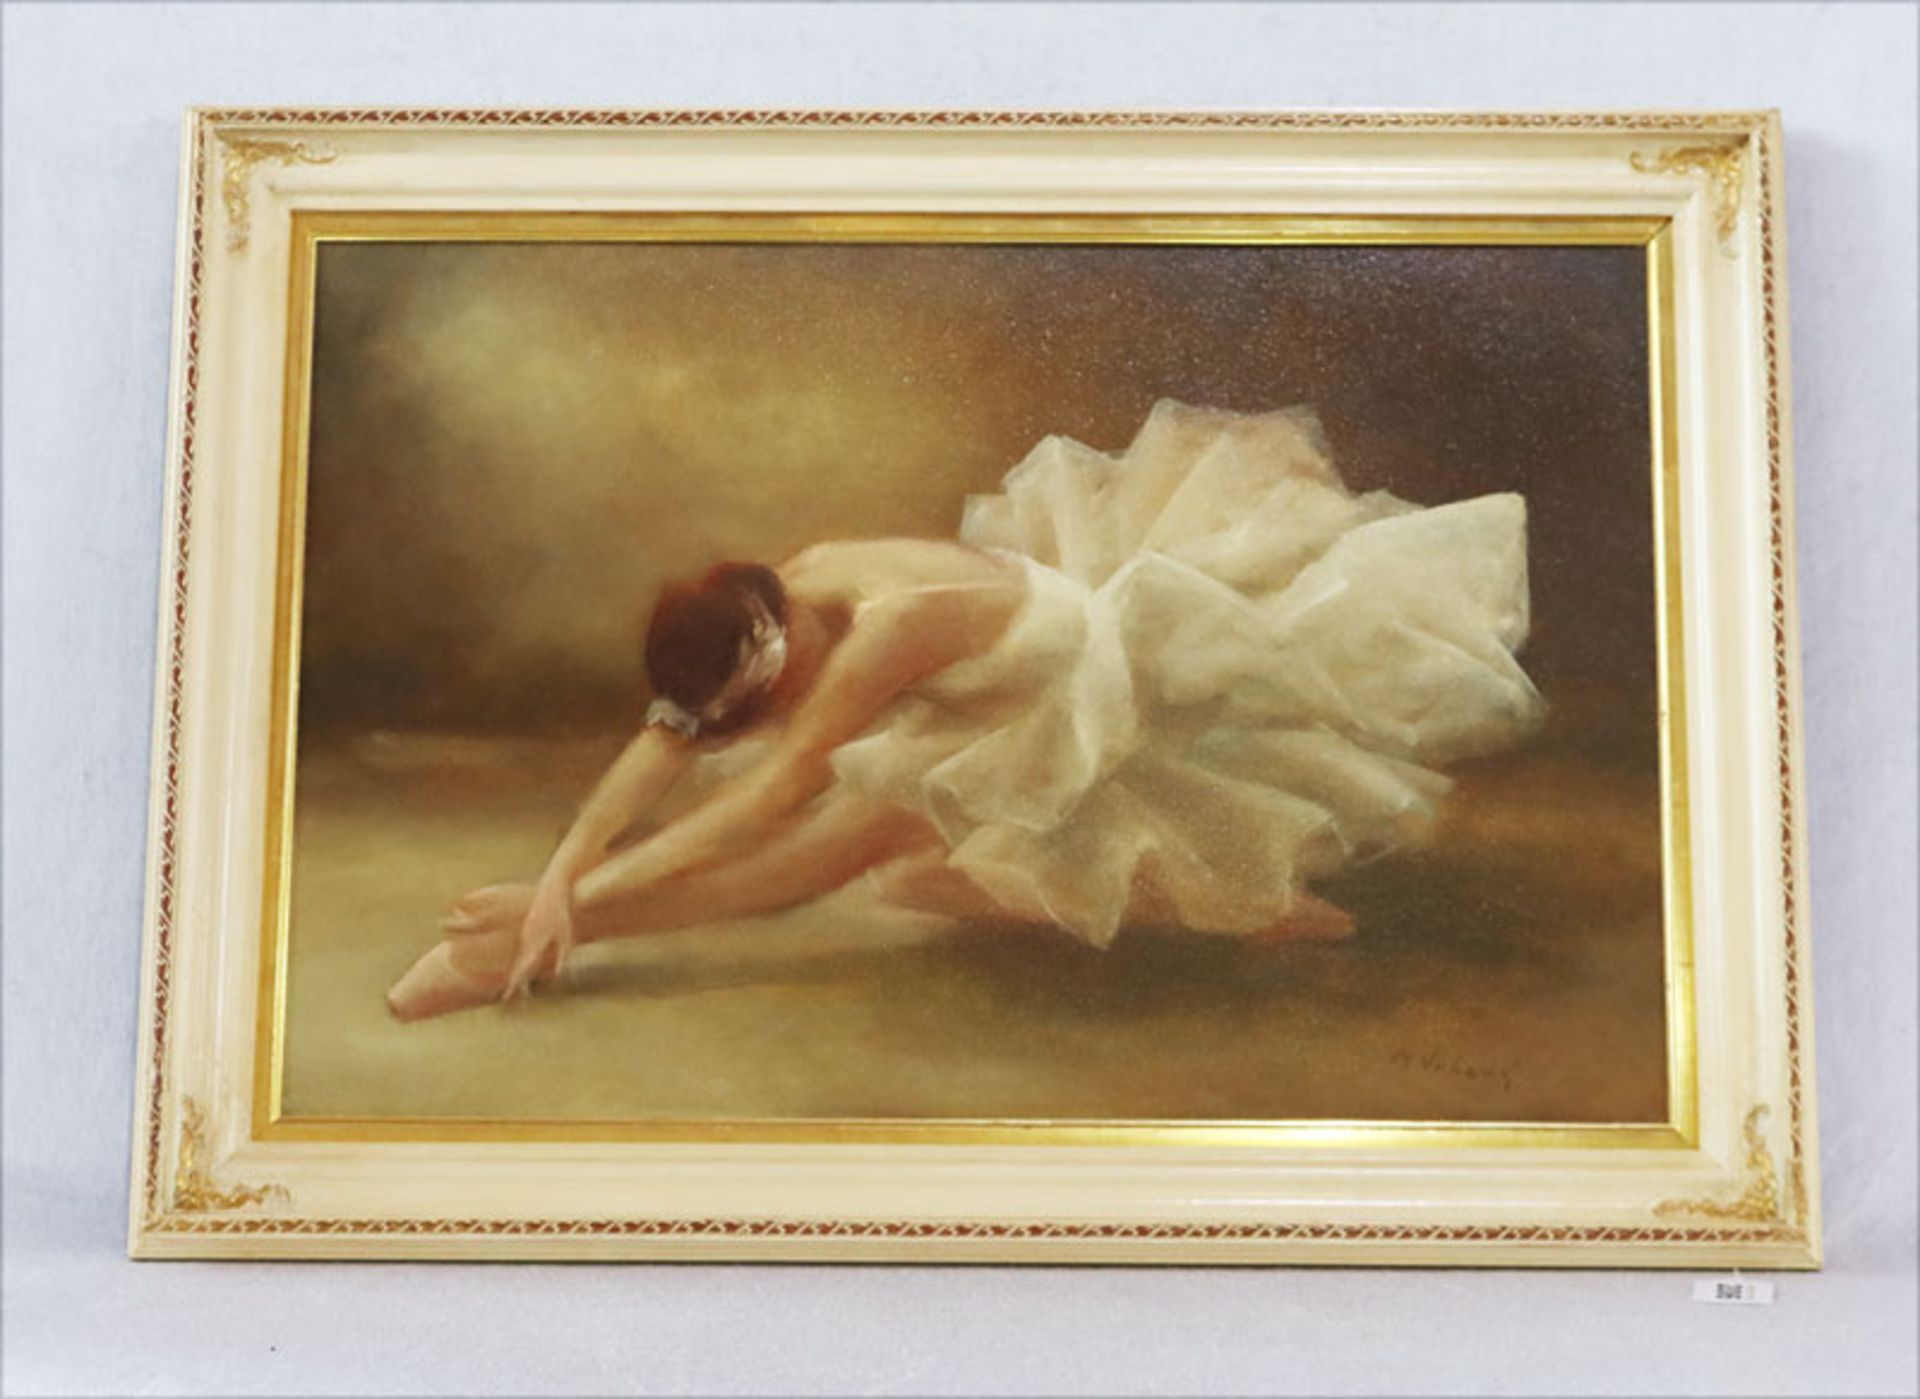 Gemälde ÖL/Hartfaser 'Ballerina', signiert M. Vrboba, Marie Miloslava Vrbova-Stefkova, * 1909